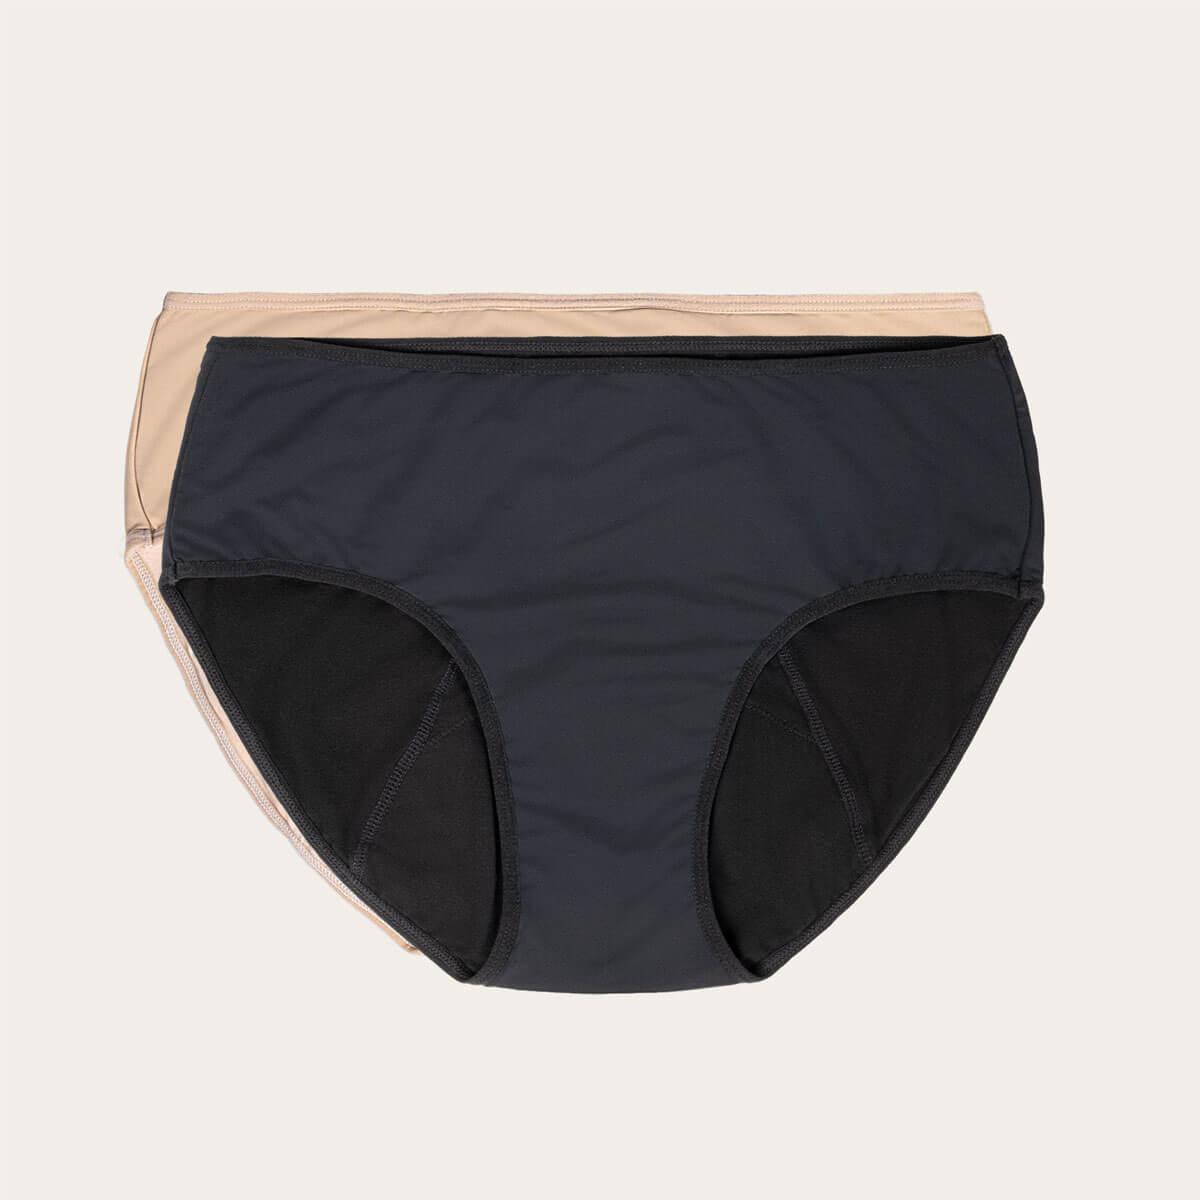 June Period Underwear - 2 Pack